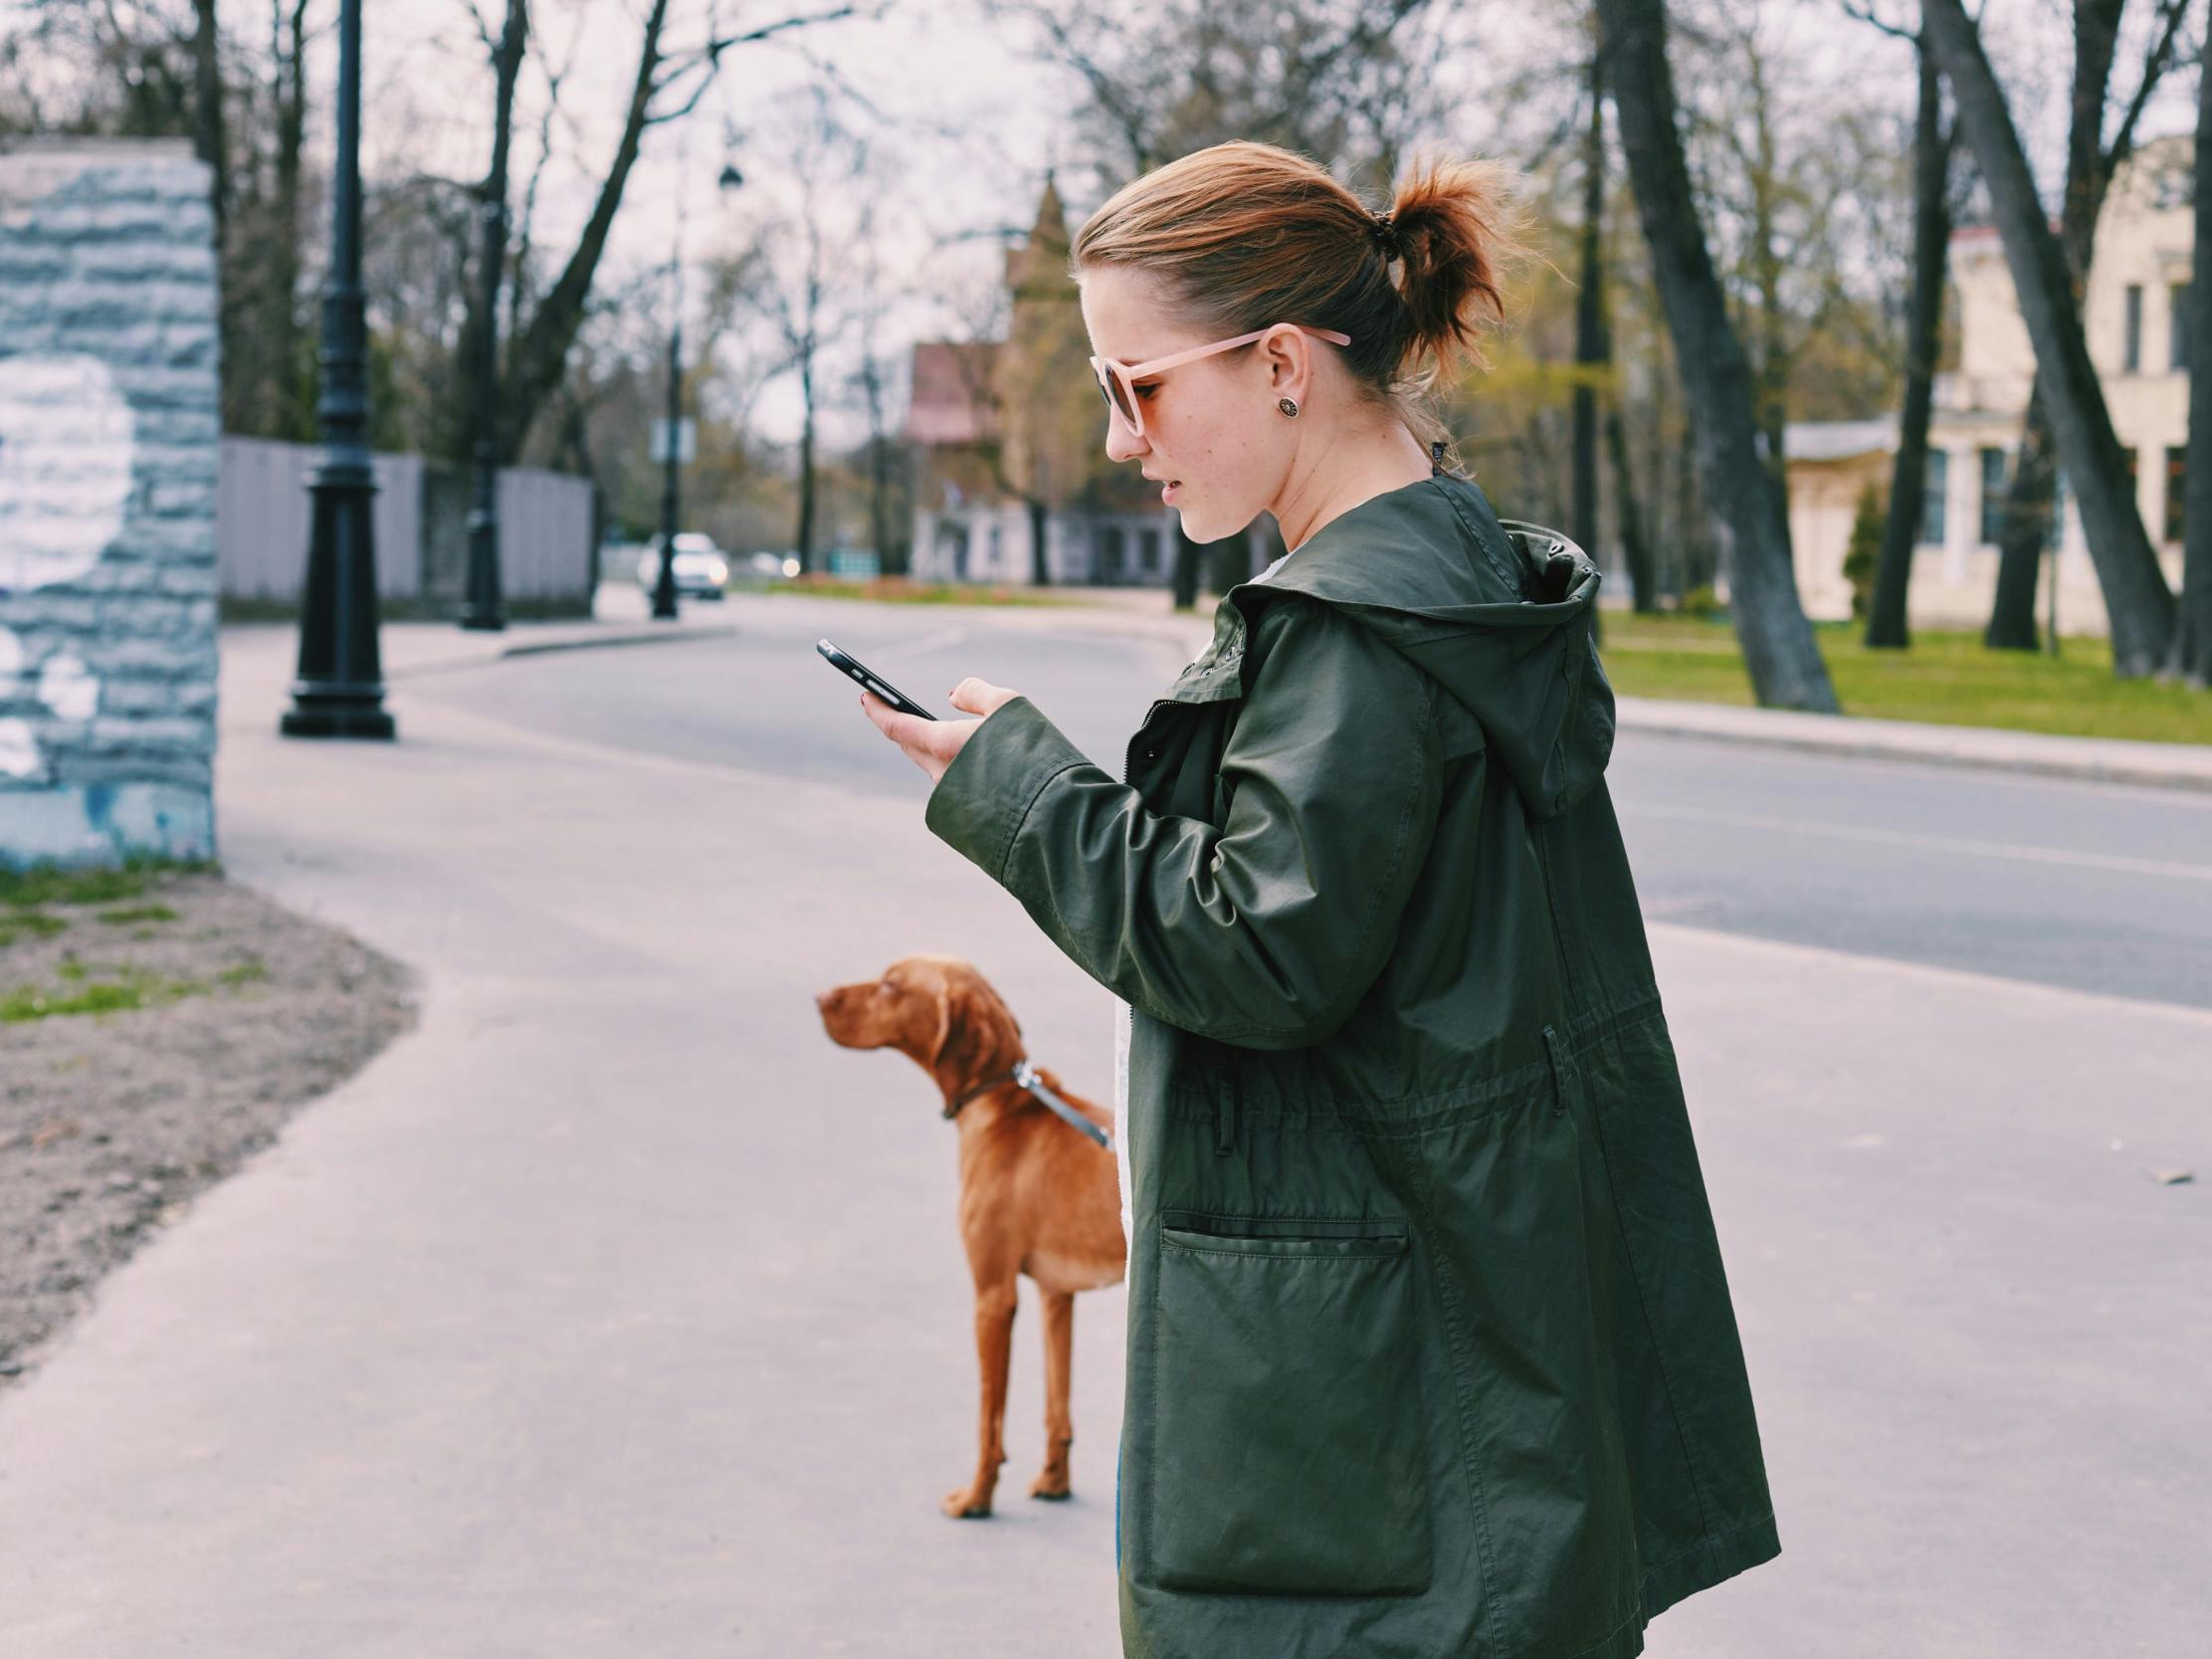 Kvinde ser på sin mobil, mens hun lufter hund.